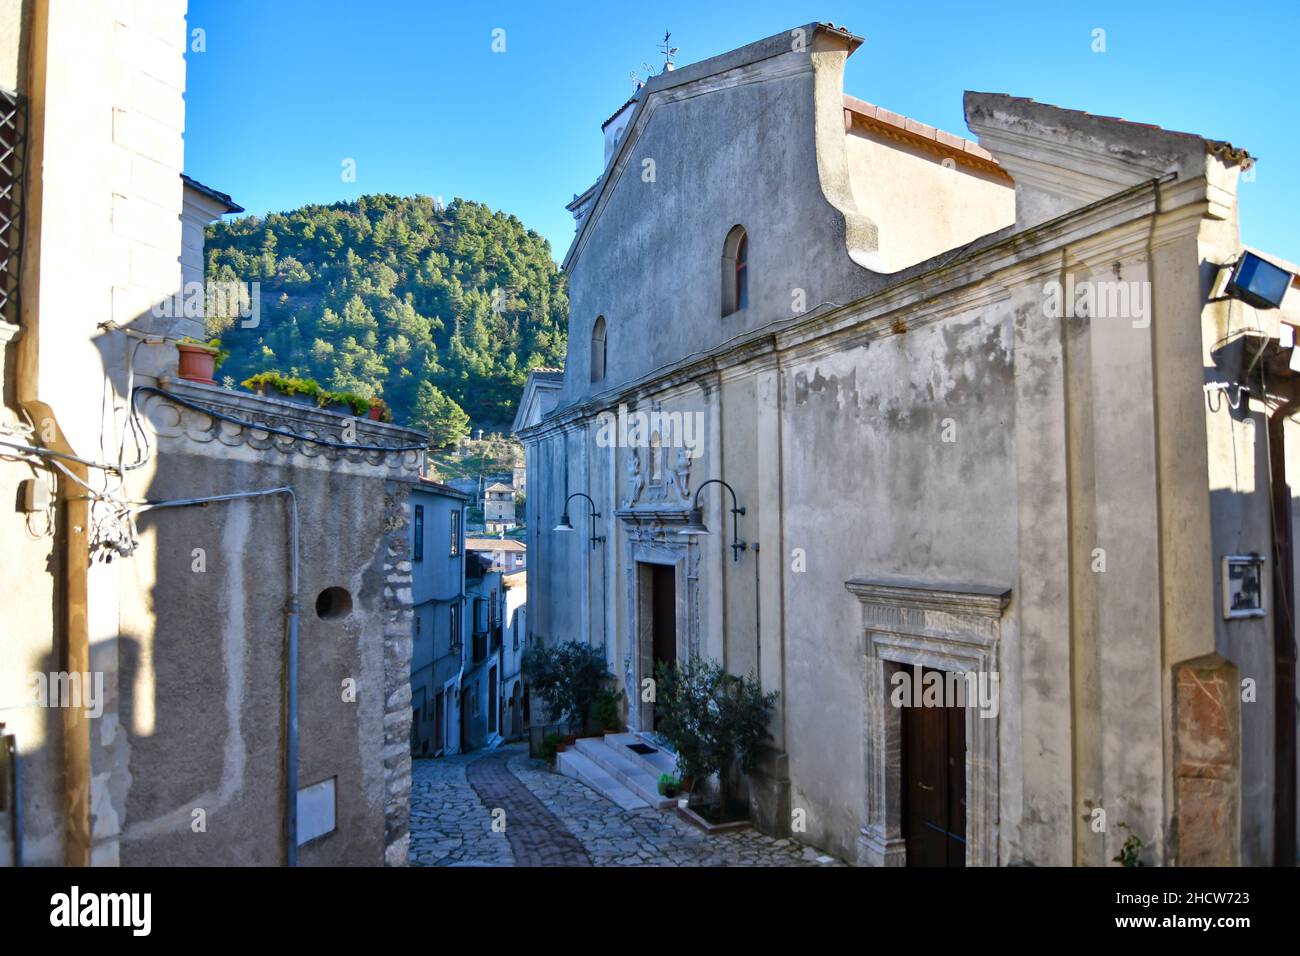 The facade of the Savoia church of Lucania, a small village in Basilicata, Italy. Stock Photo